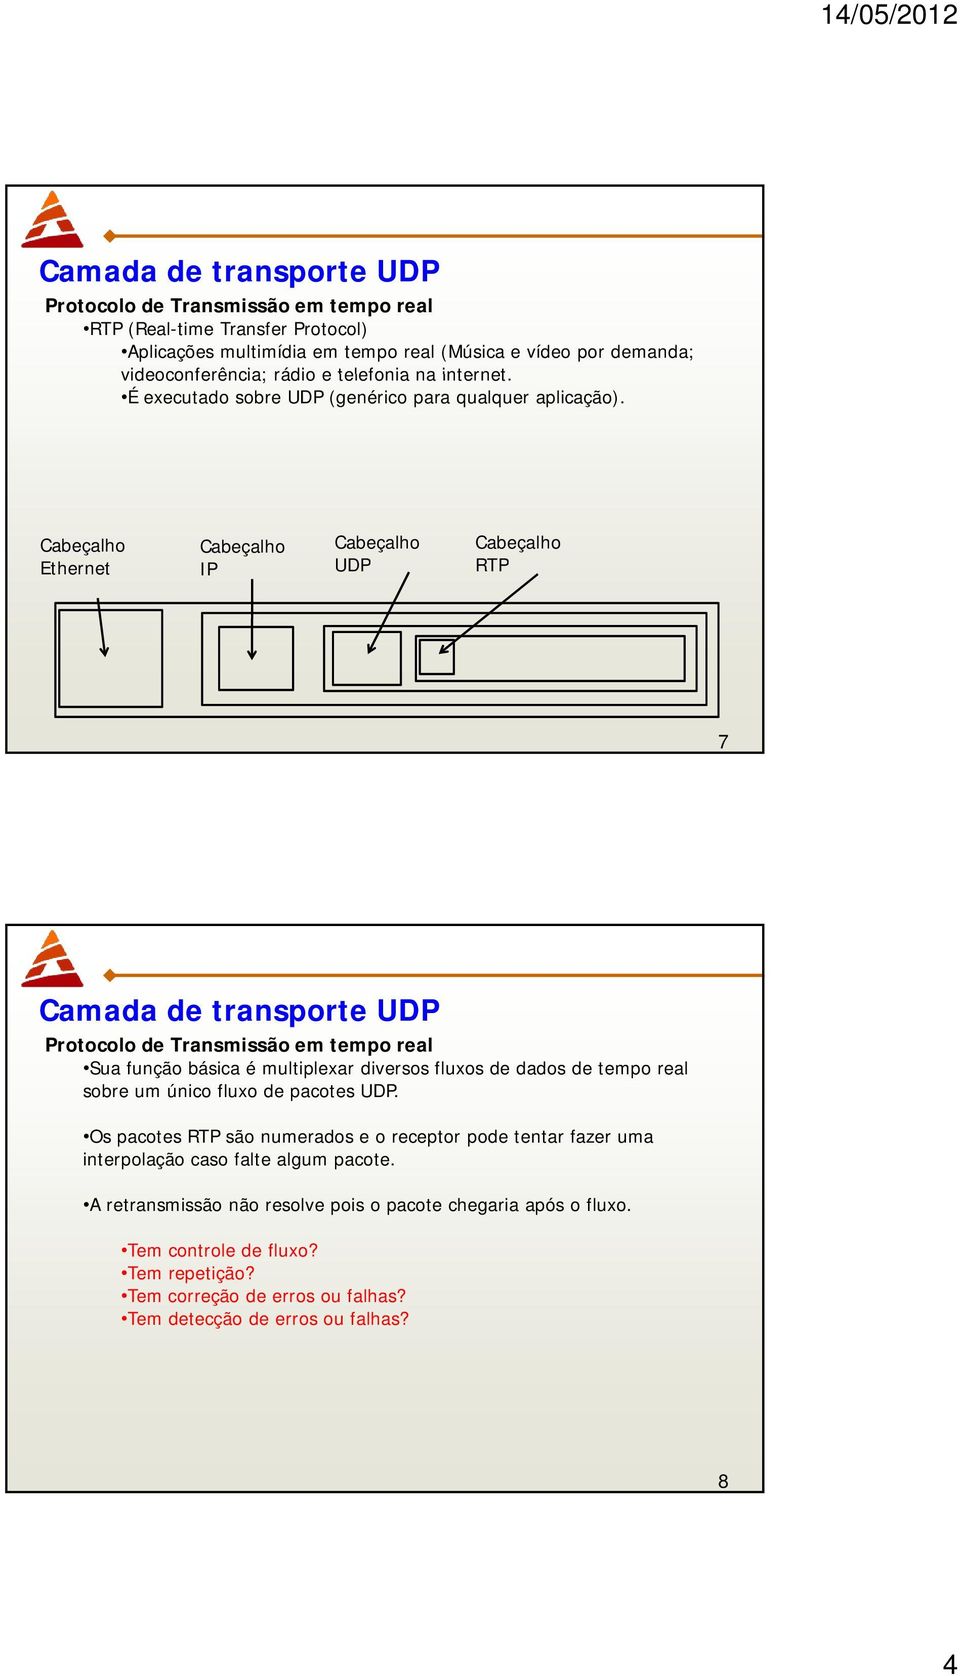 Cabeçalho Cabeçalho Cabeçalho Cabeçalho Ethernet IP UDP RTP 7 Camada de transporte UDP Protocolo de Transmissão em tempo real Sua função básica é multiplexar diversos fluxos de dados de tempo